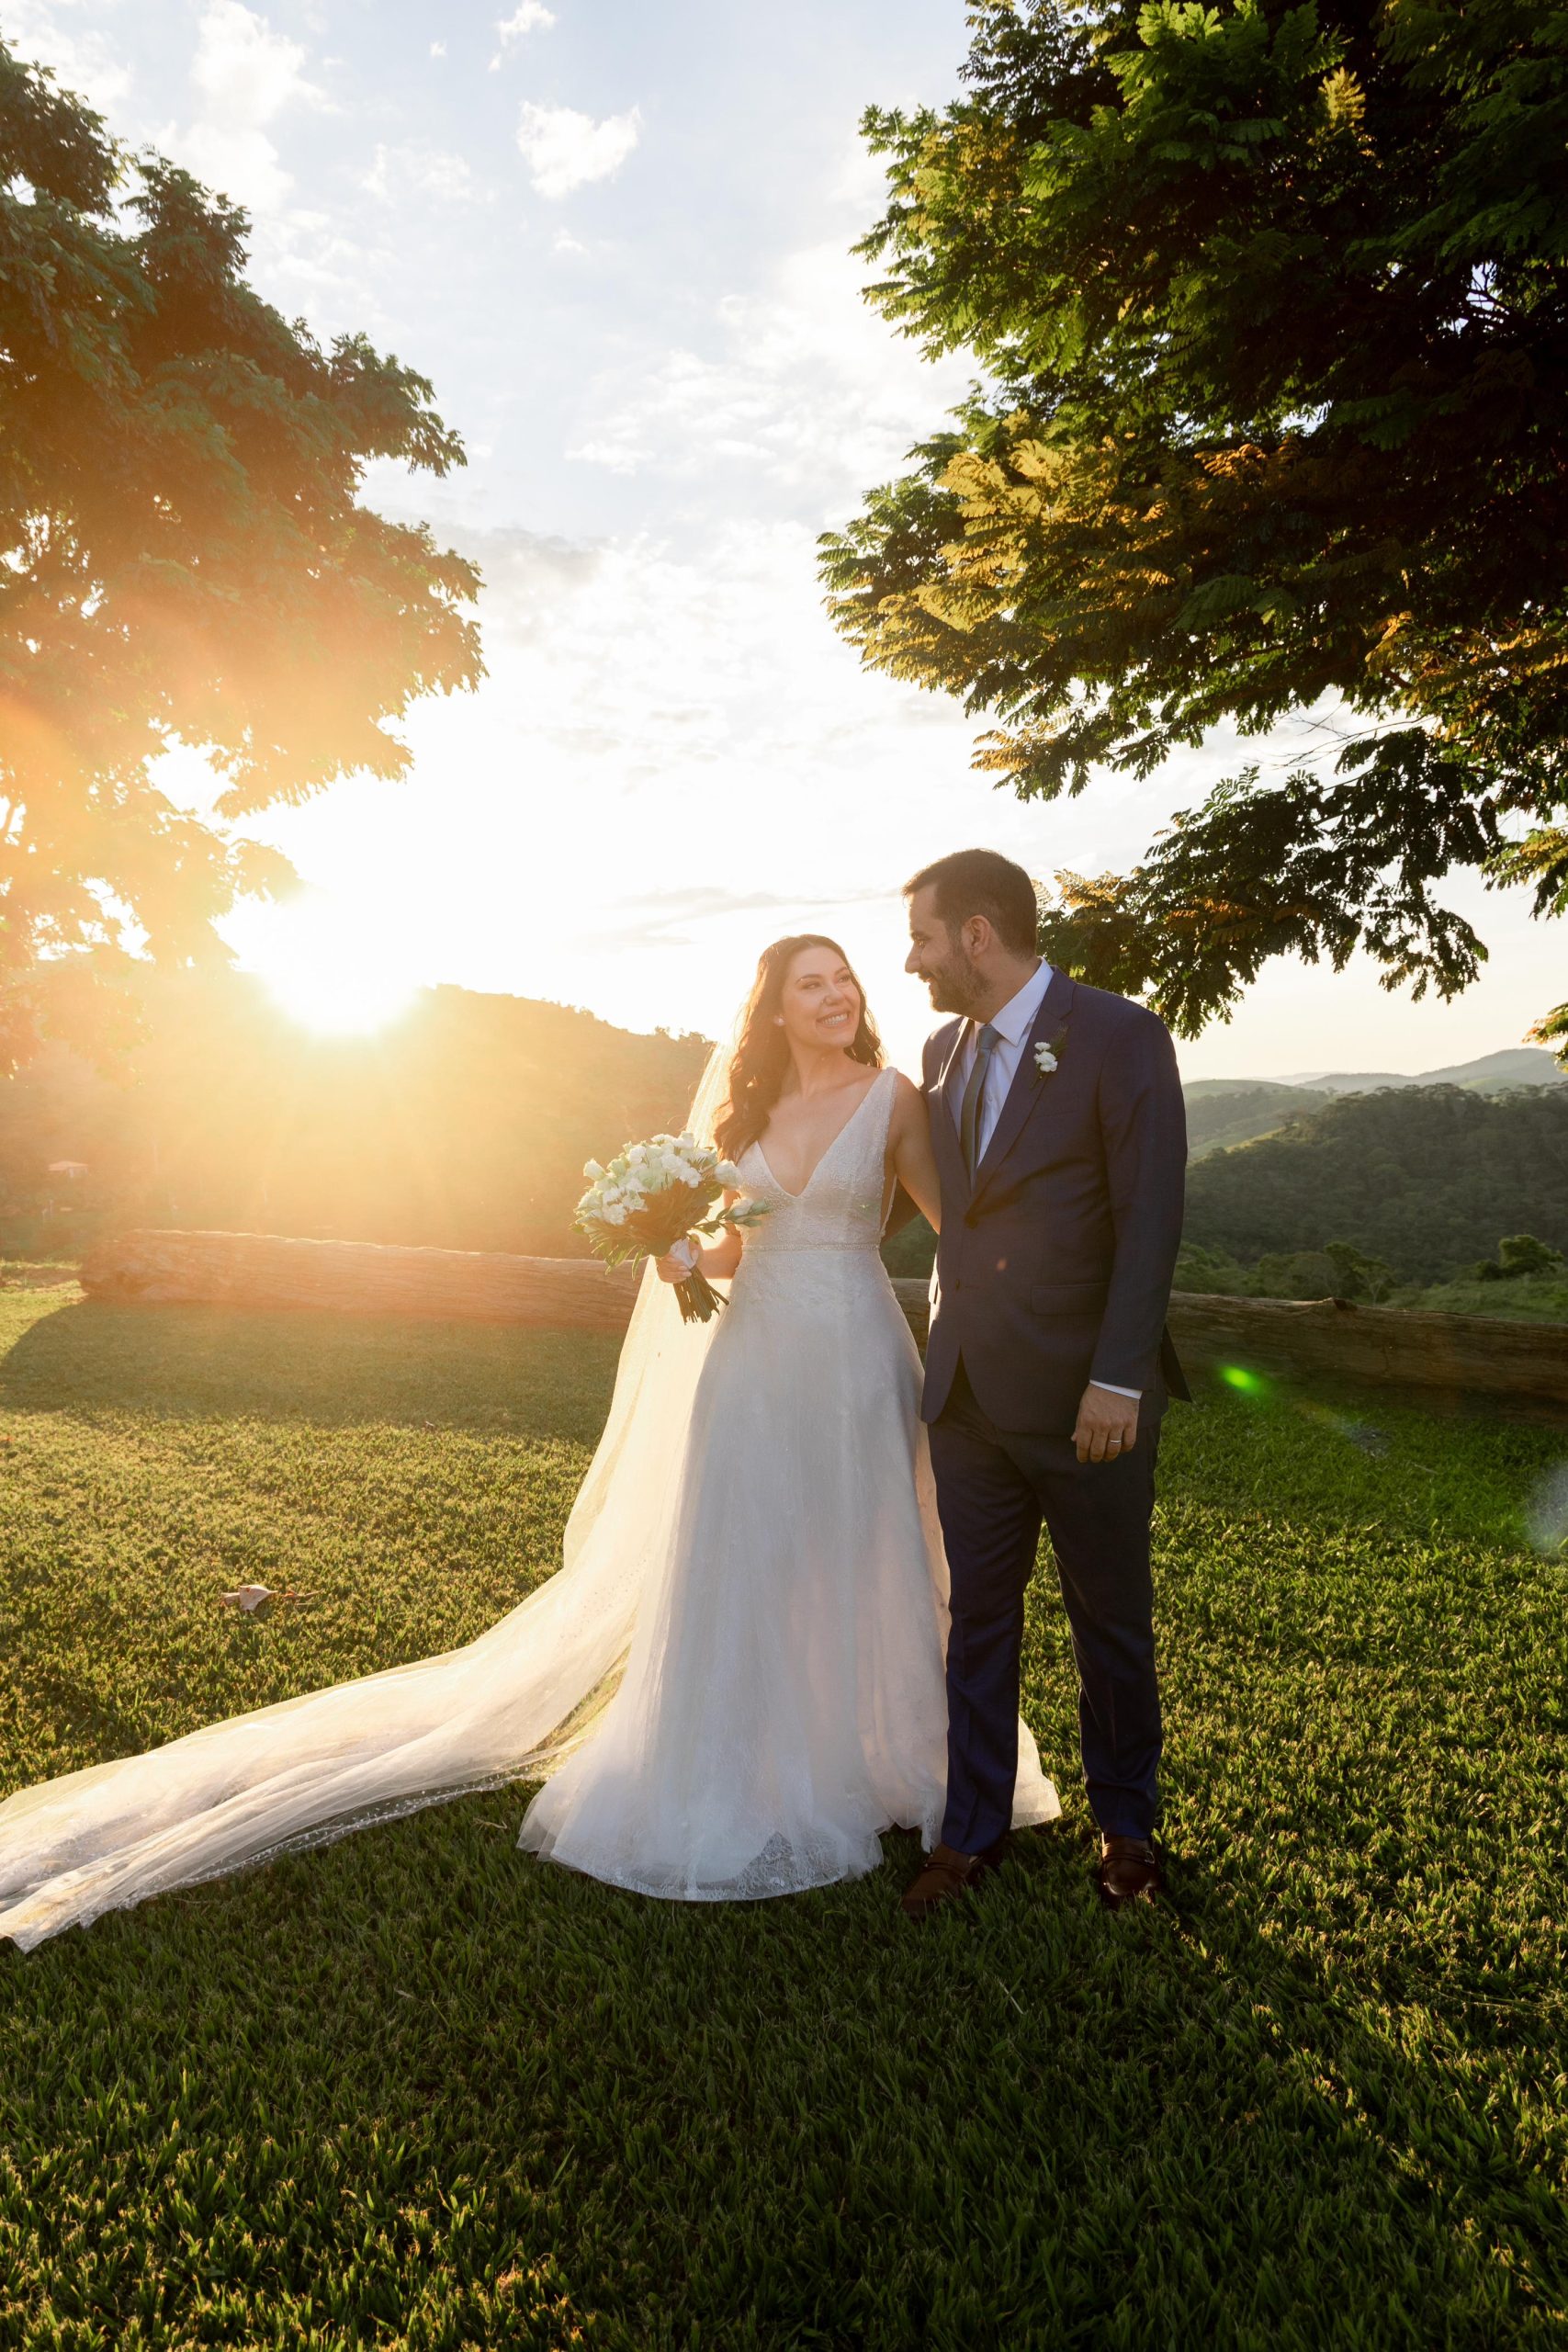 Pôr do sol durante cerimônia de casamento | Foto: Giovani Garcia